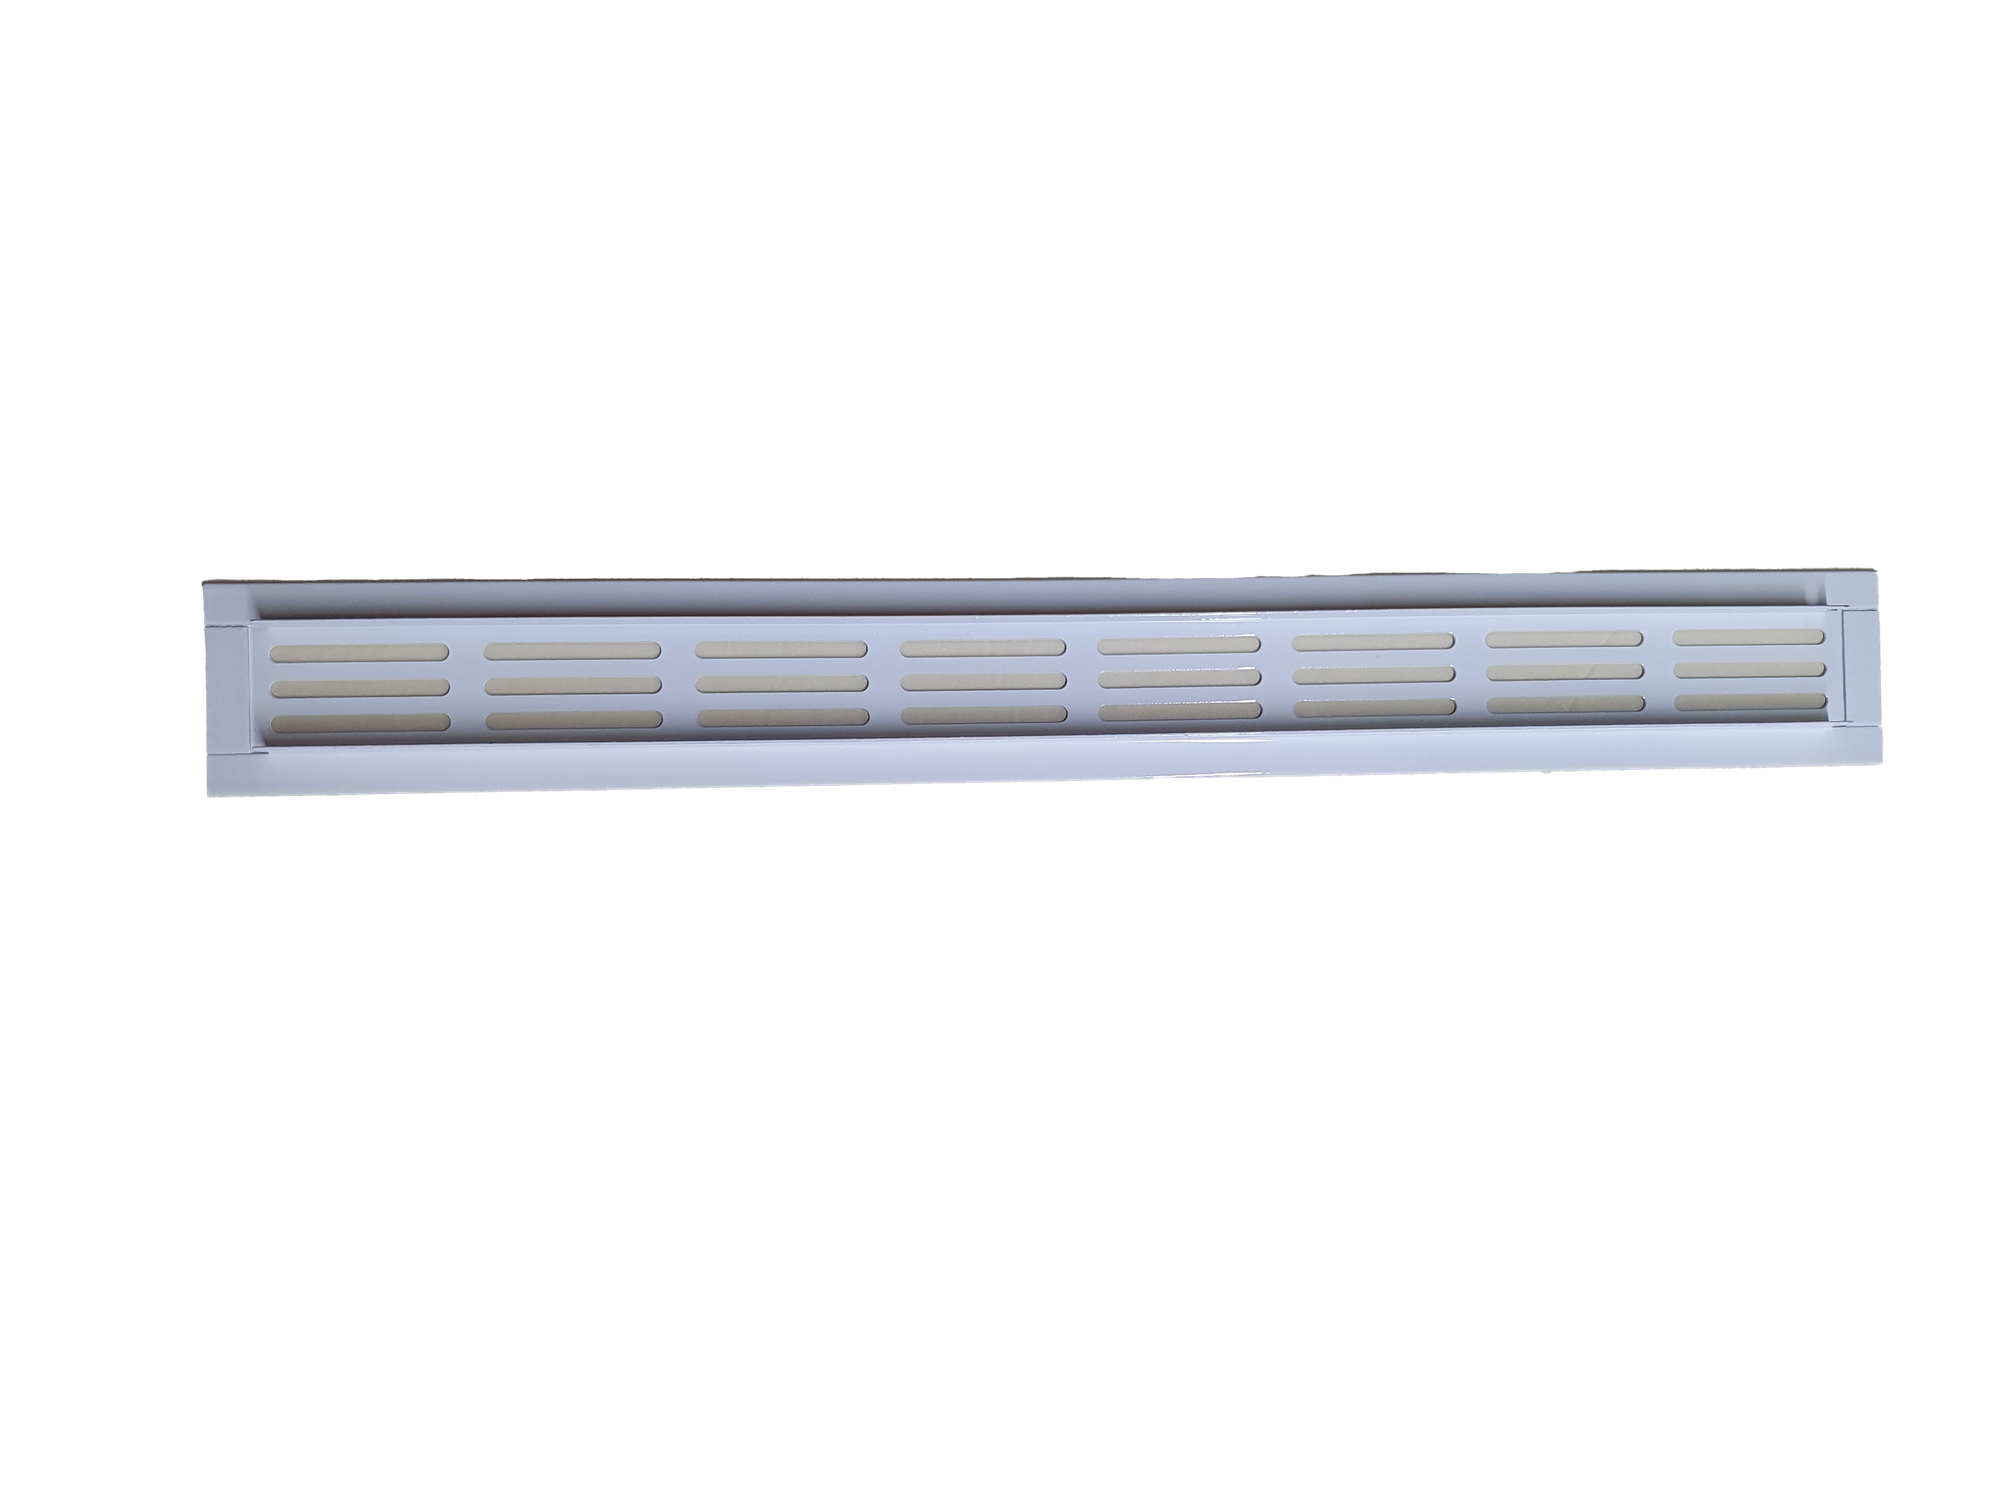 Врезная решетка из листовой стали толщиной до 1,0 мм с перфорацией овал, окрашенной в белый цвет RAL 9016, габаритный размер 400х60мм.